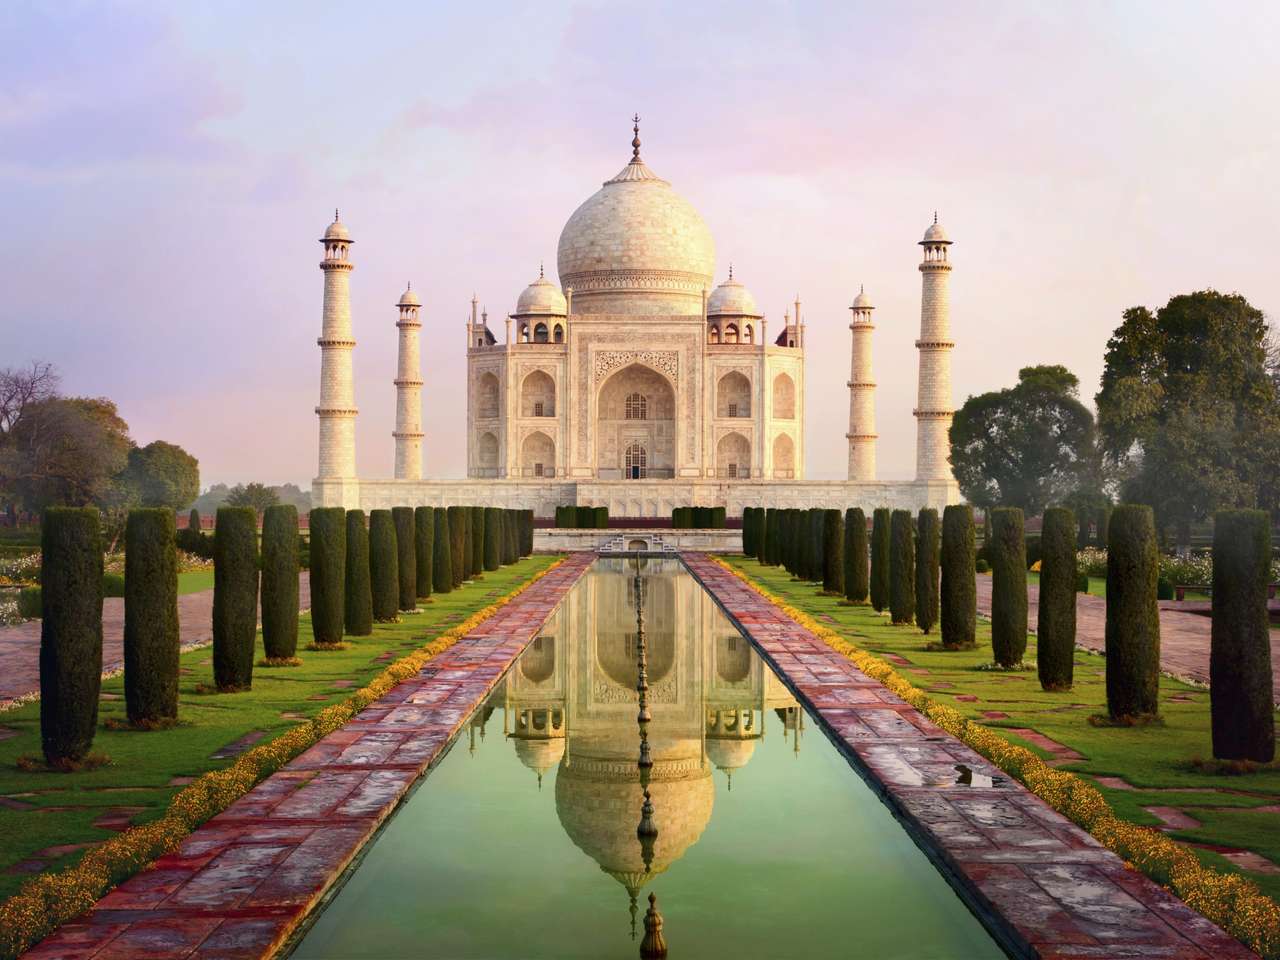 Infamul Taj Mahal jigsaw puzzle online